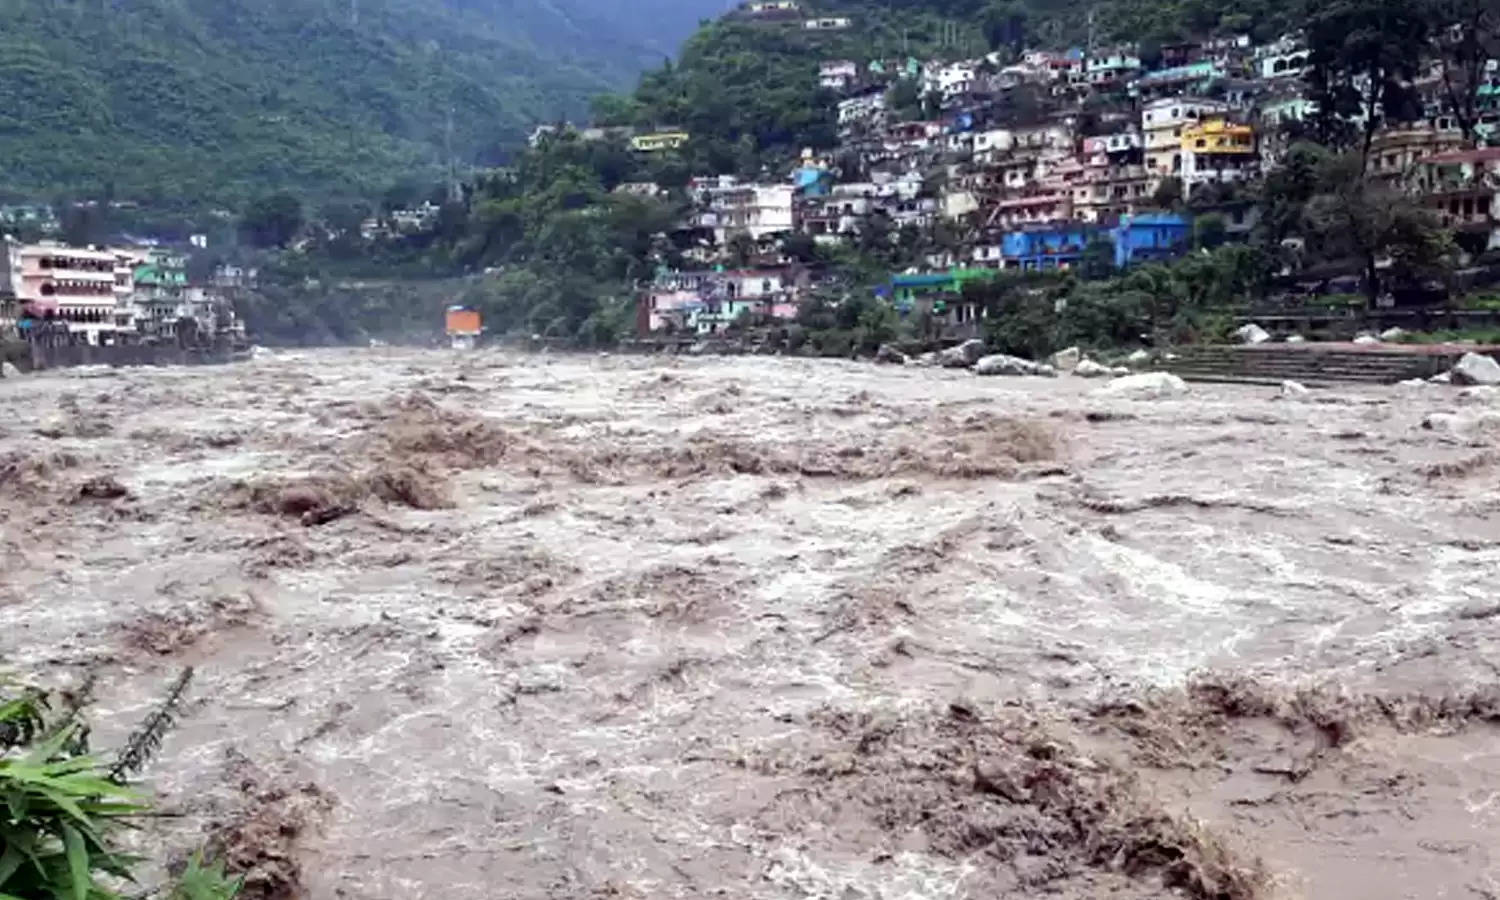 Uttarakhand News Bulletin-30 : बारिश के चलते बढ़ा अलकनंदा और मंदाकिनी का जल स्तर, जानिए रुद्रप्रयाग की ऐसी ही तमाम छोटी बड़ी खबरें...